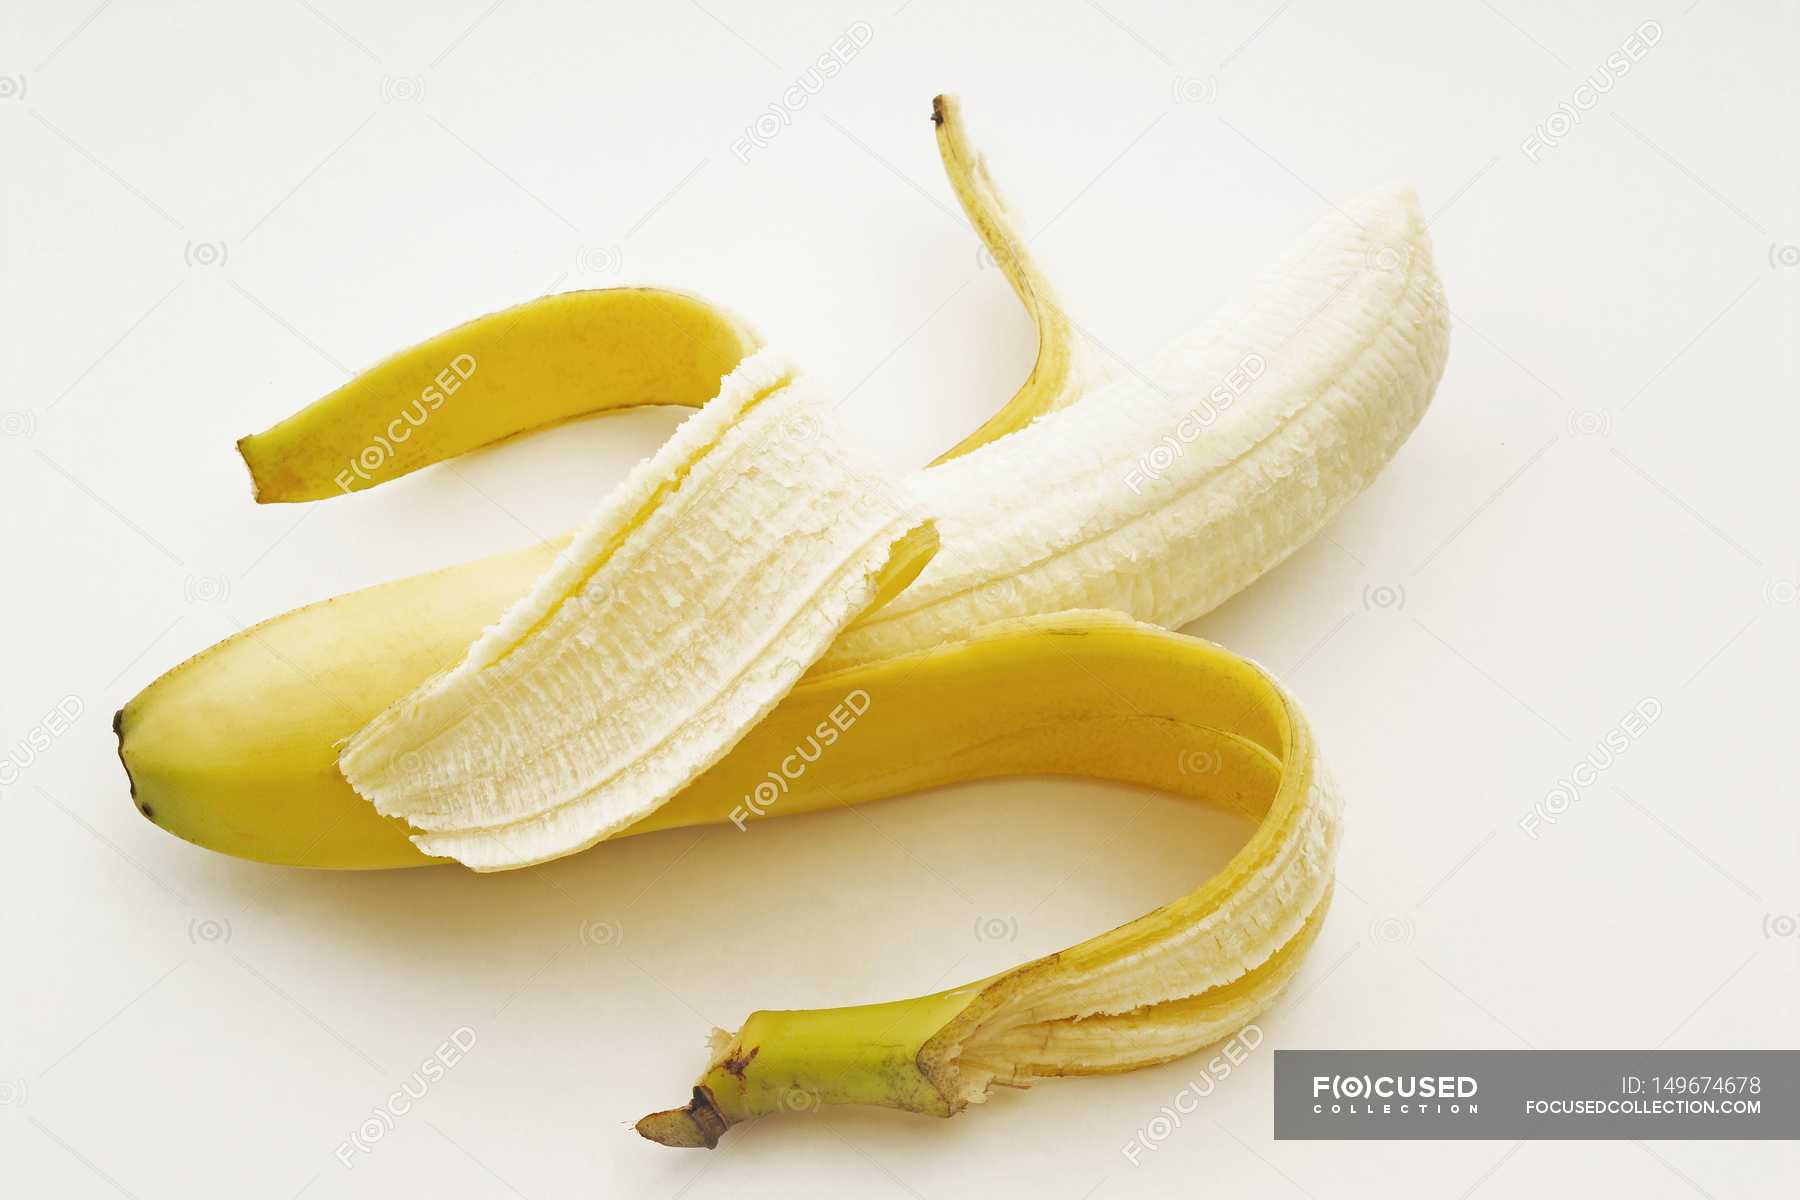 One Partially Peeled Banana — Stock Photo | #149674678